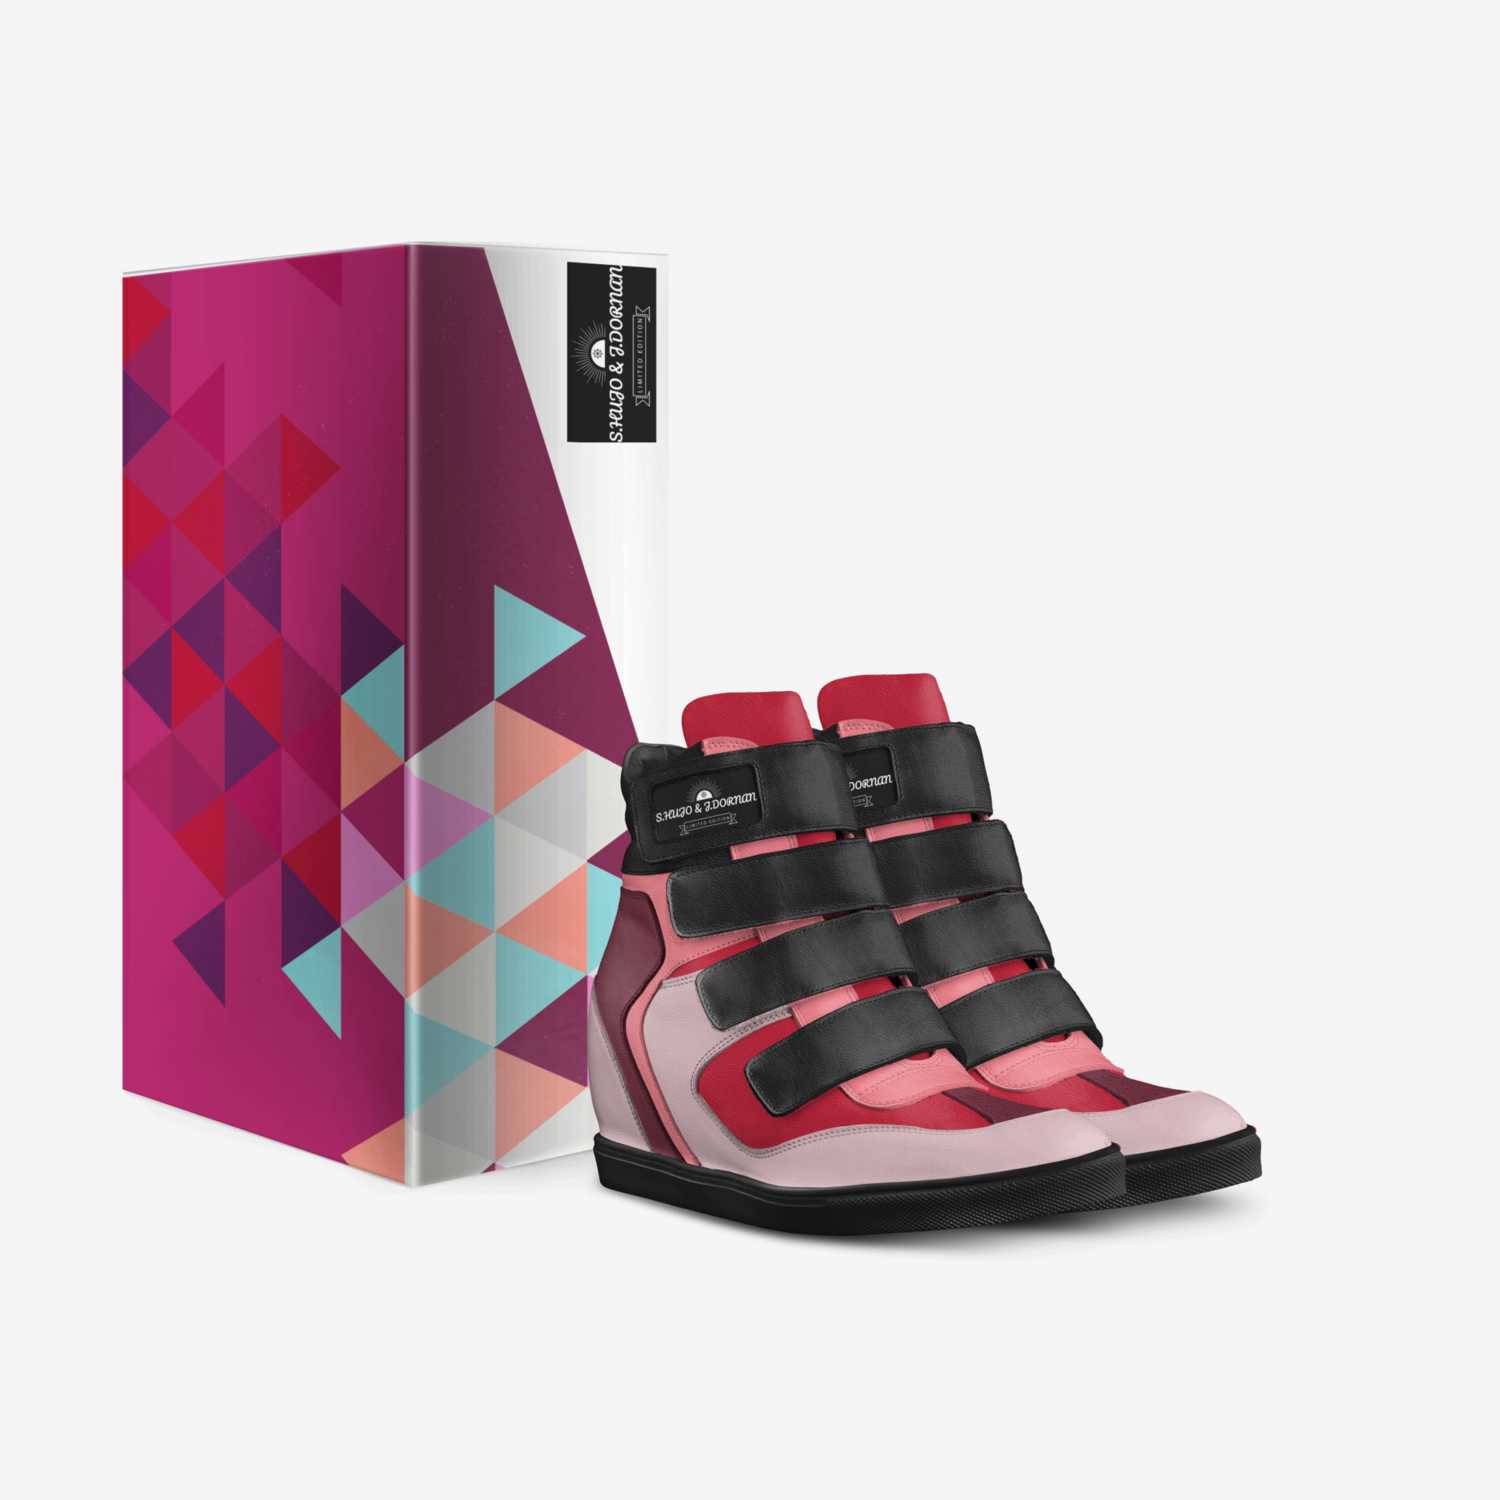 S.HUJO & J.DORNAN custom made in Italy shoes by Samuel | Box view